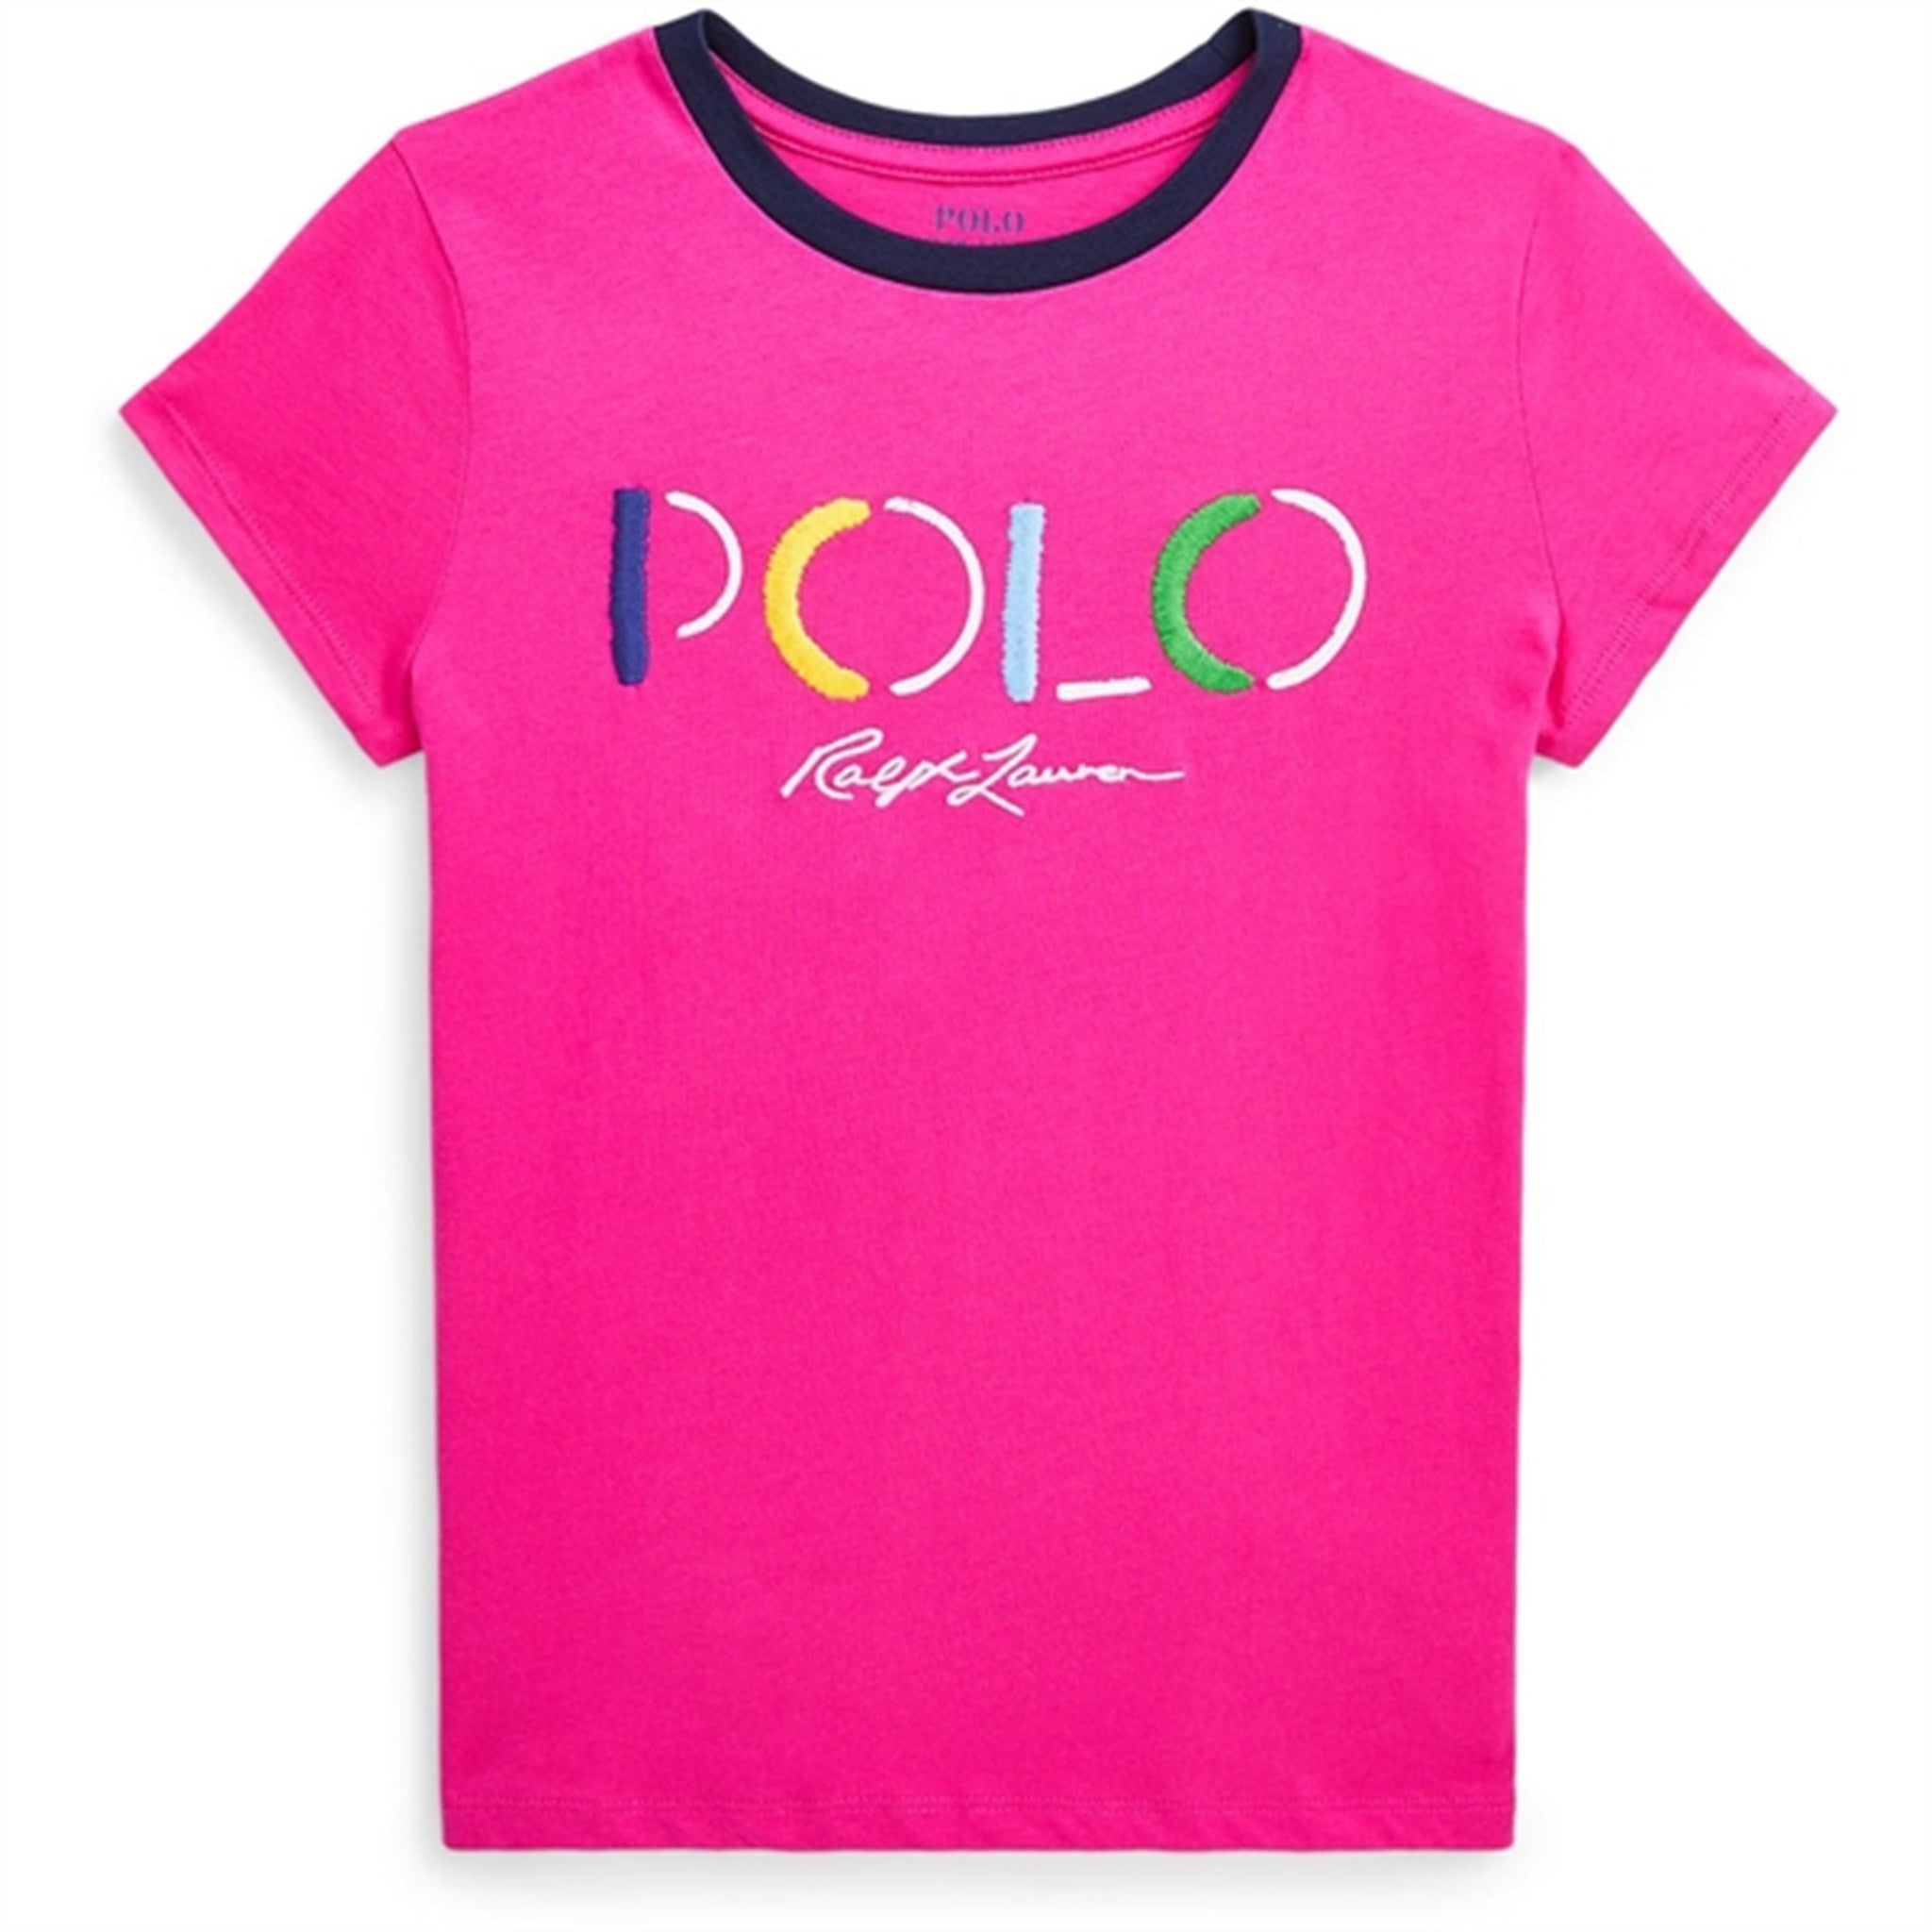 Polo Ralph Lauren Girls T-Shirt Bright Pink